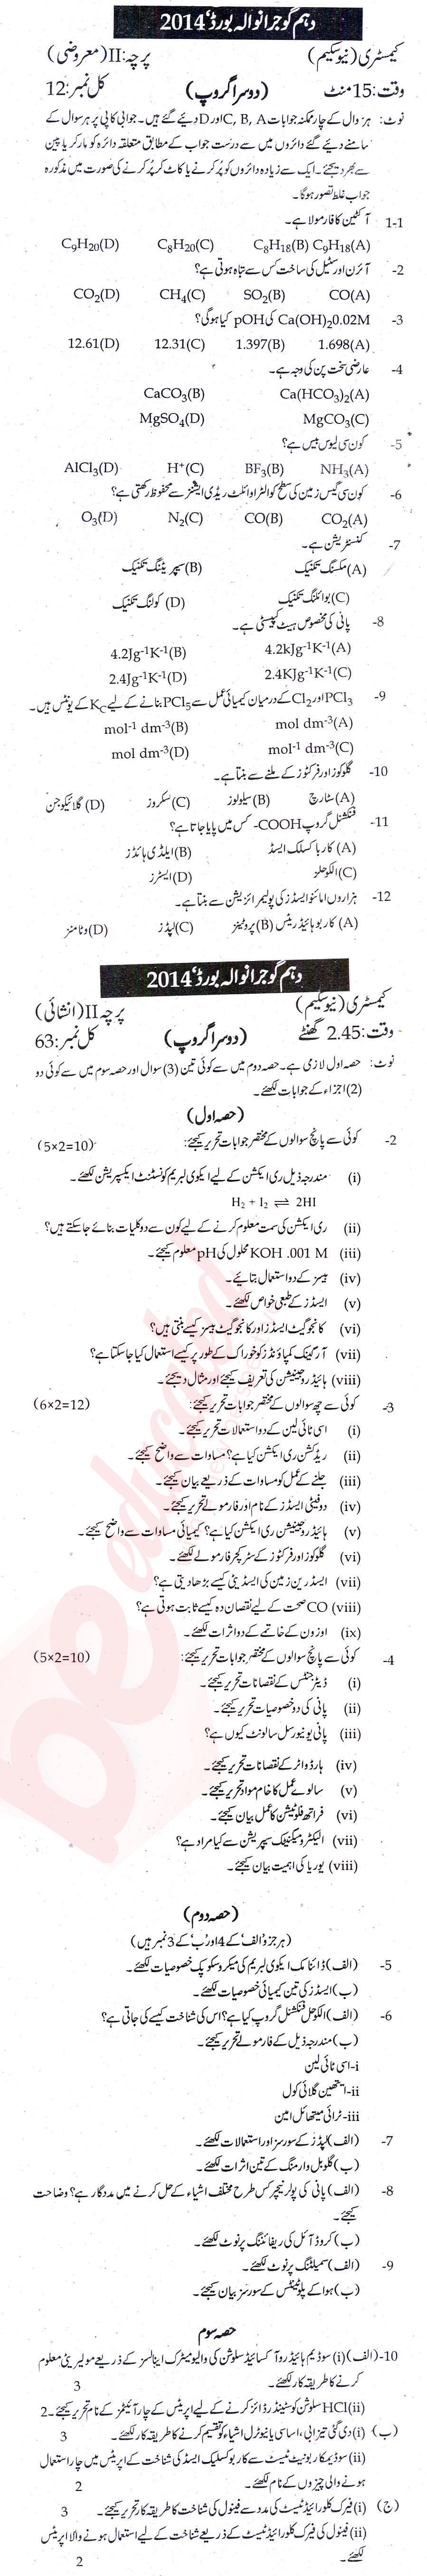 Chemistry 10th Urdu Medium Past Paper Group 2 BISE Gujranwala 2014